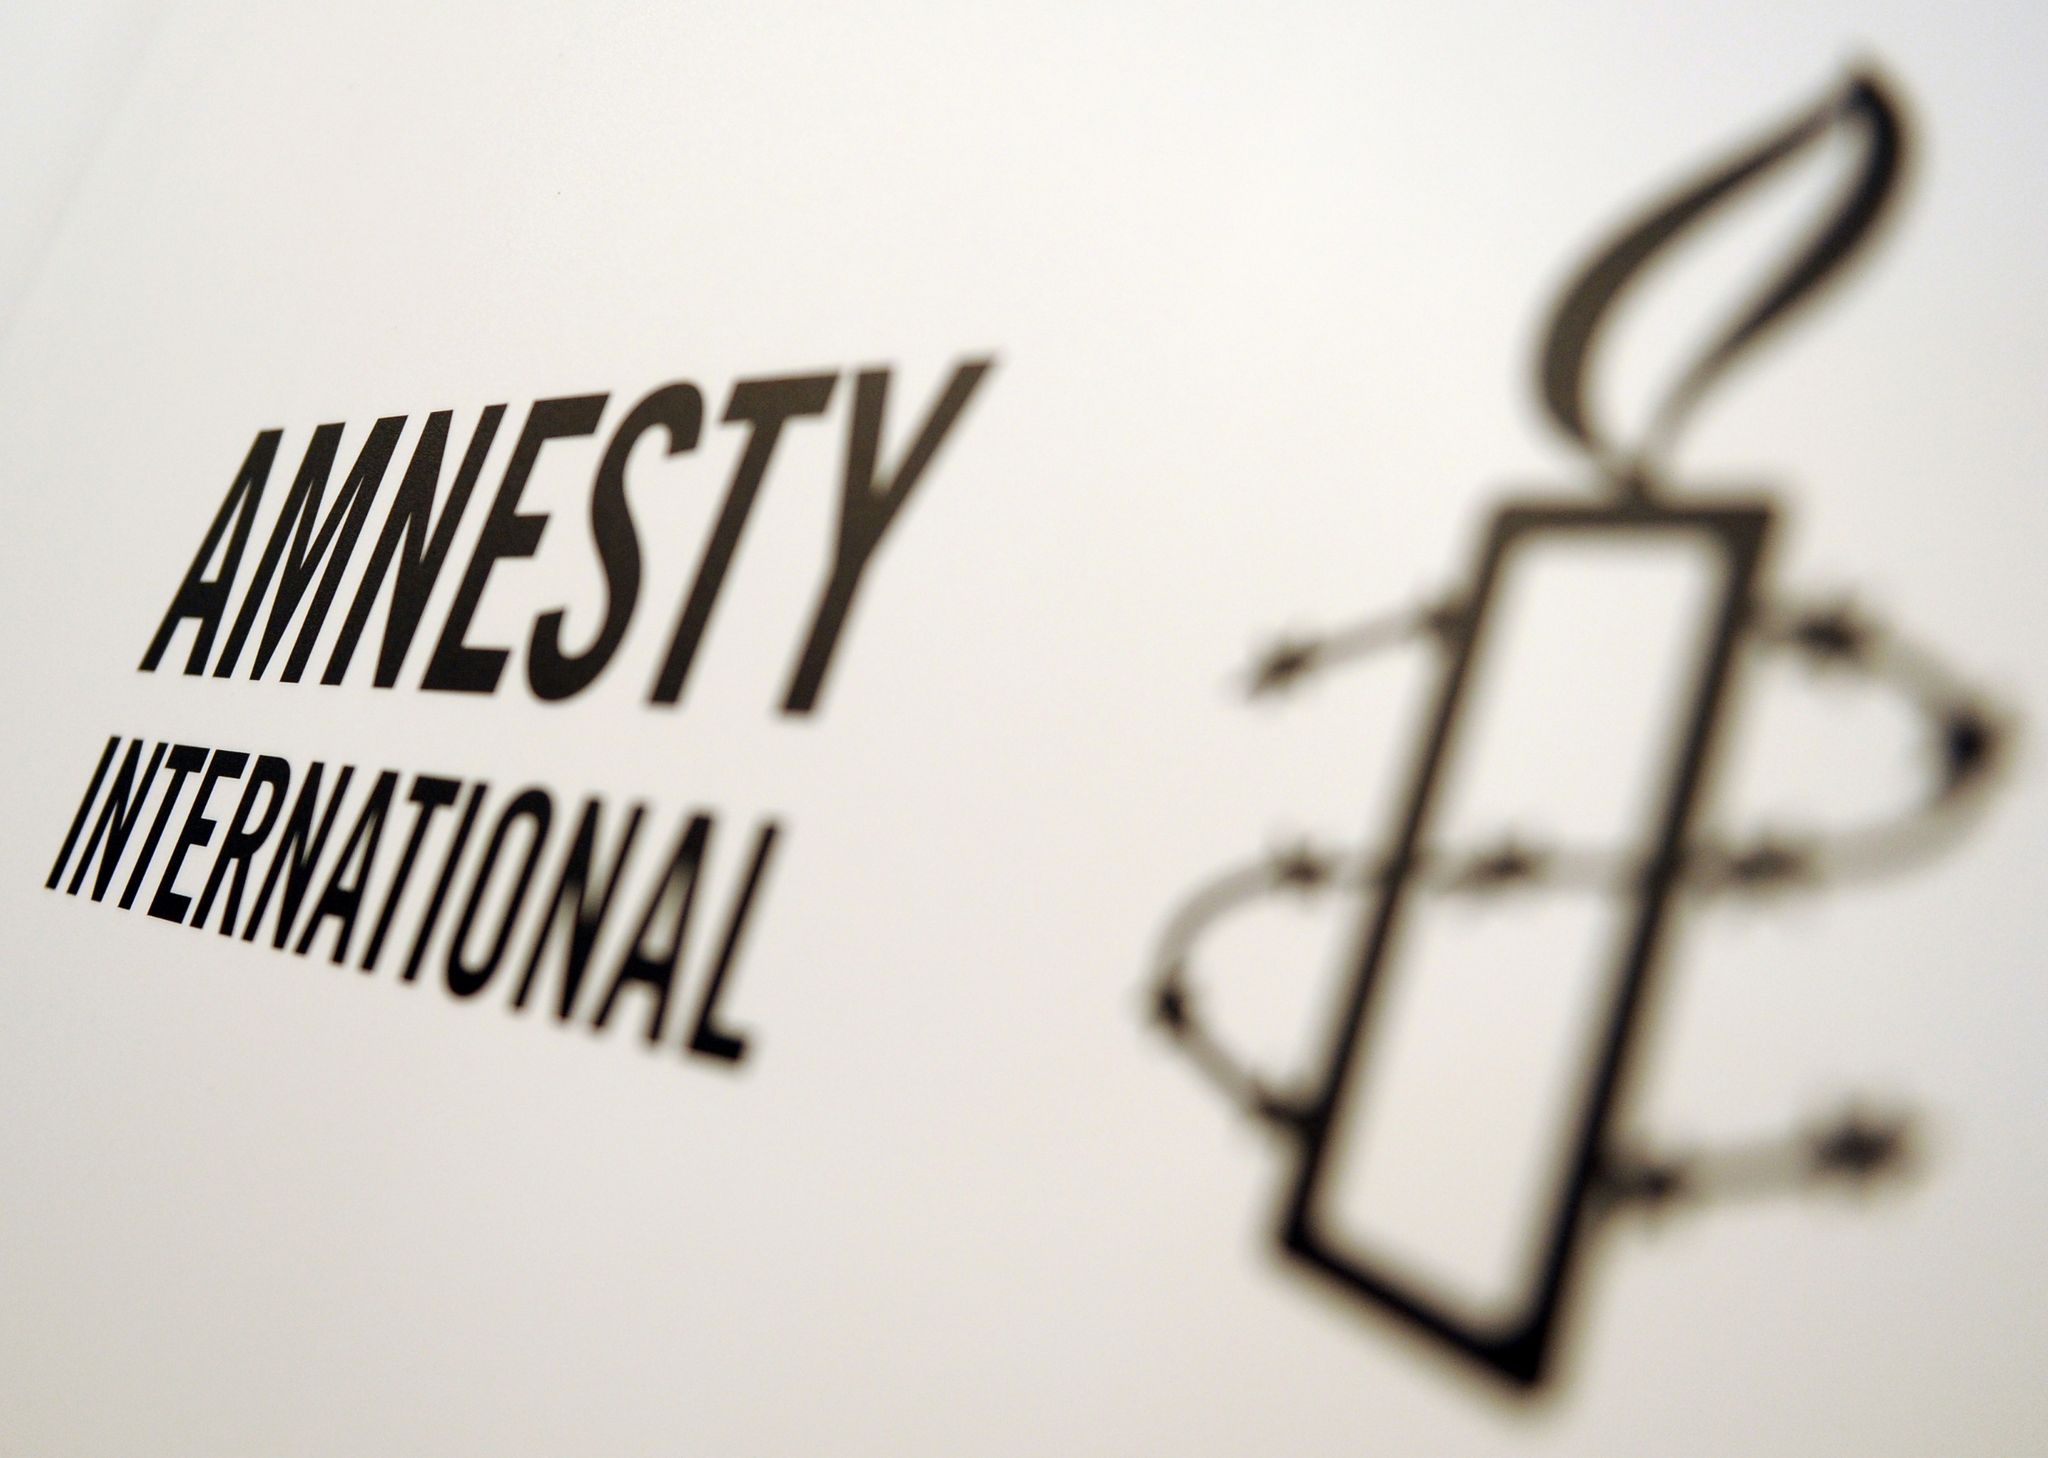 In einem neuen Bericht zeichnet die Nichtregierungsorganisation Amnesty International ein verheerendes Bild: Die internationale Rechtsordnung sei in Gefahr.